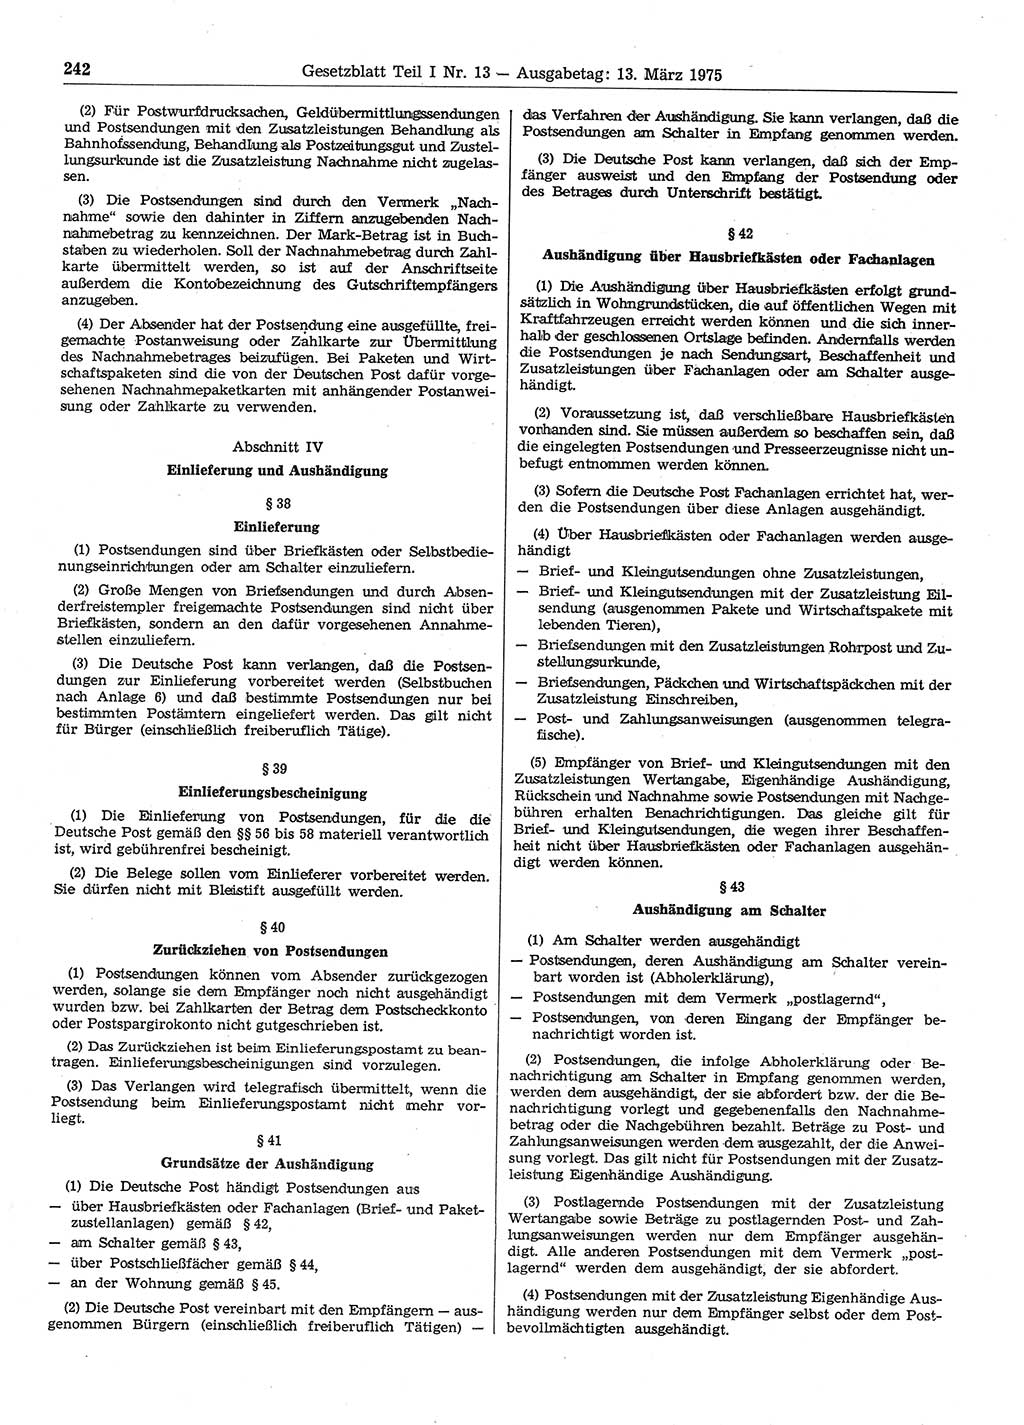 Gesetzblatt (GBl.) der Deutschen Demokratischen Republik (DDR) Teil Ⅰ 1975, Seite 242 (GBl. DDR Ⅰ 1975, S. 242)